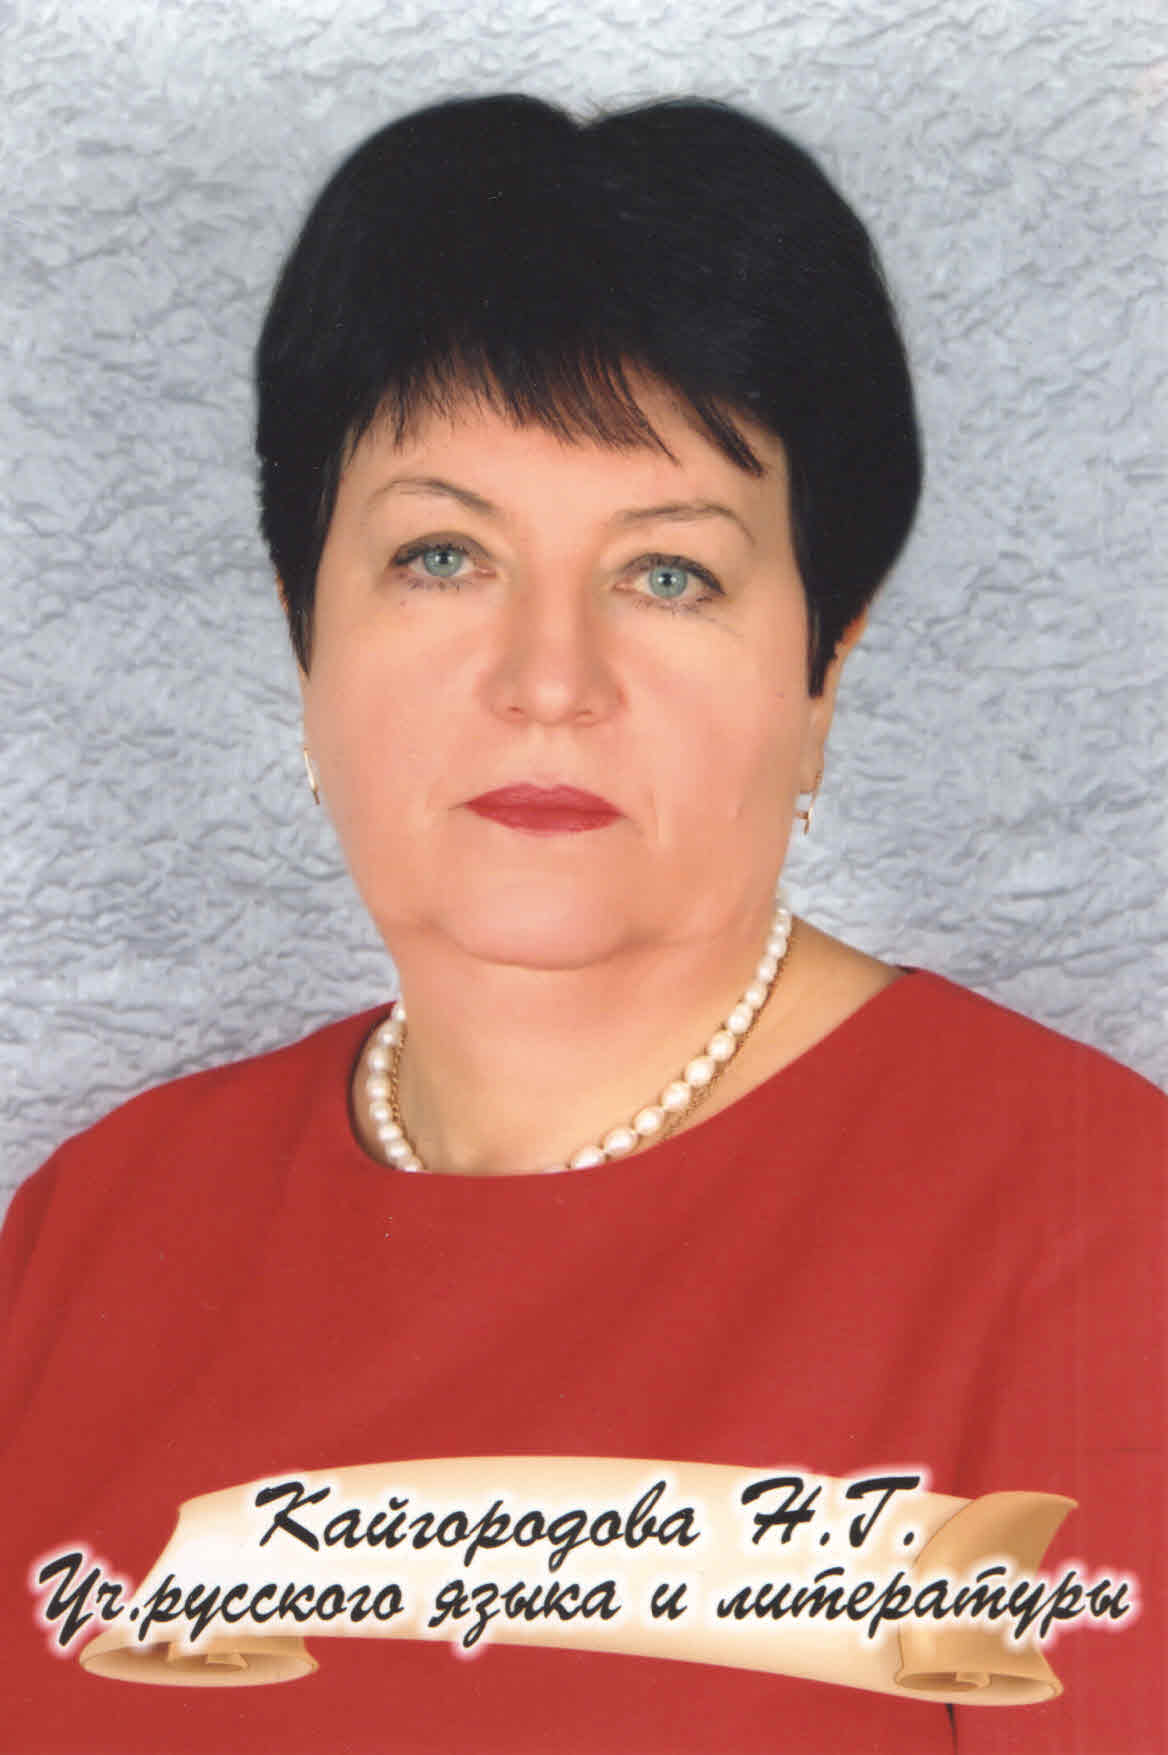 Кайгородова Наталья Григорьевна.